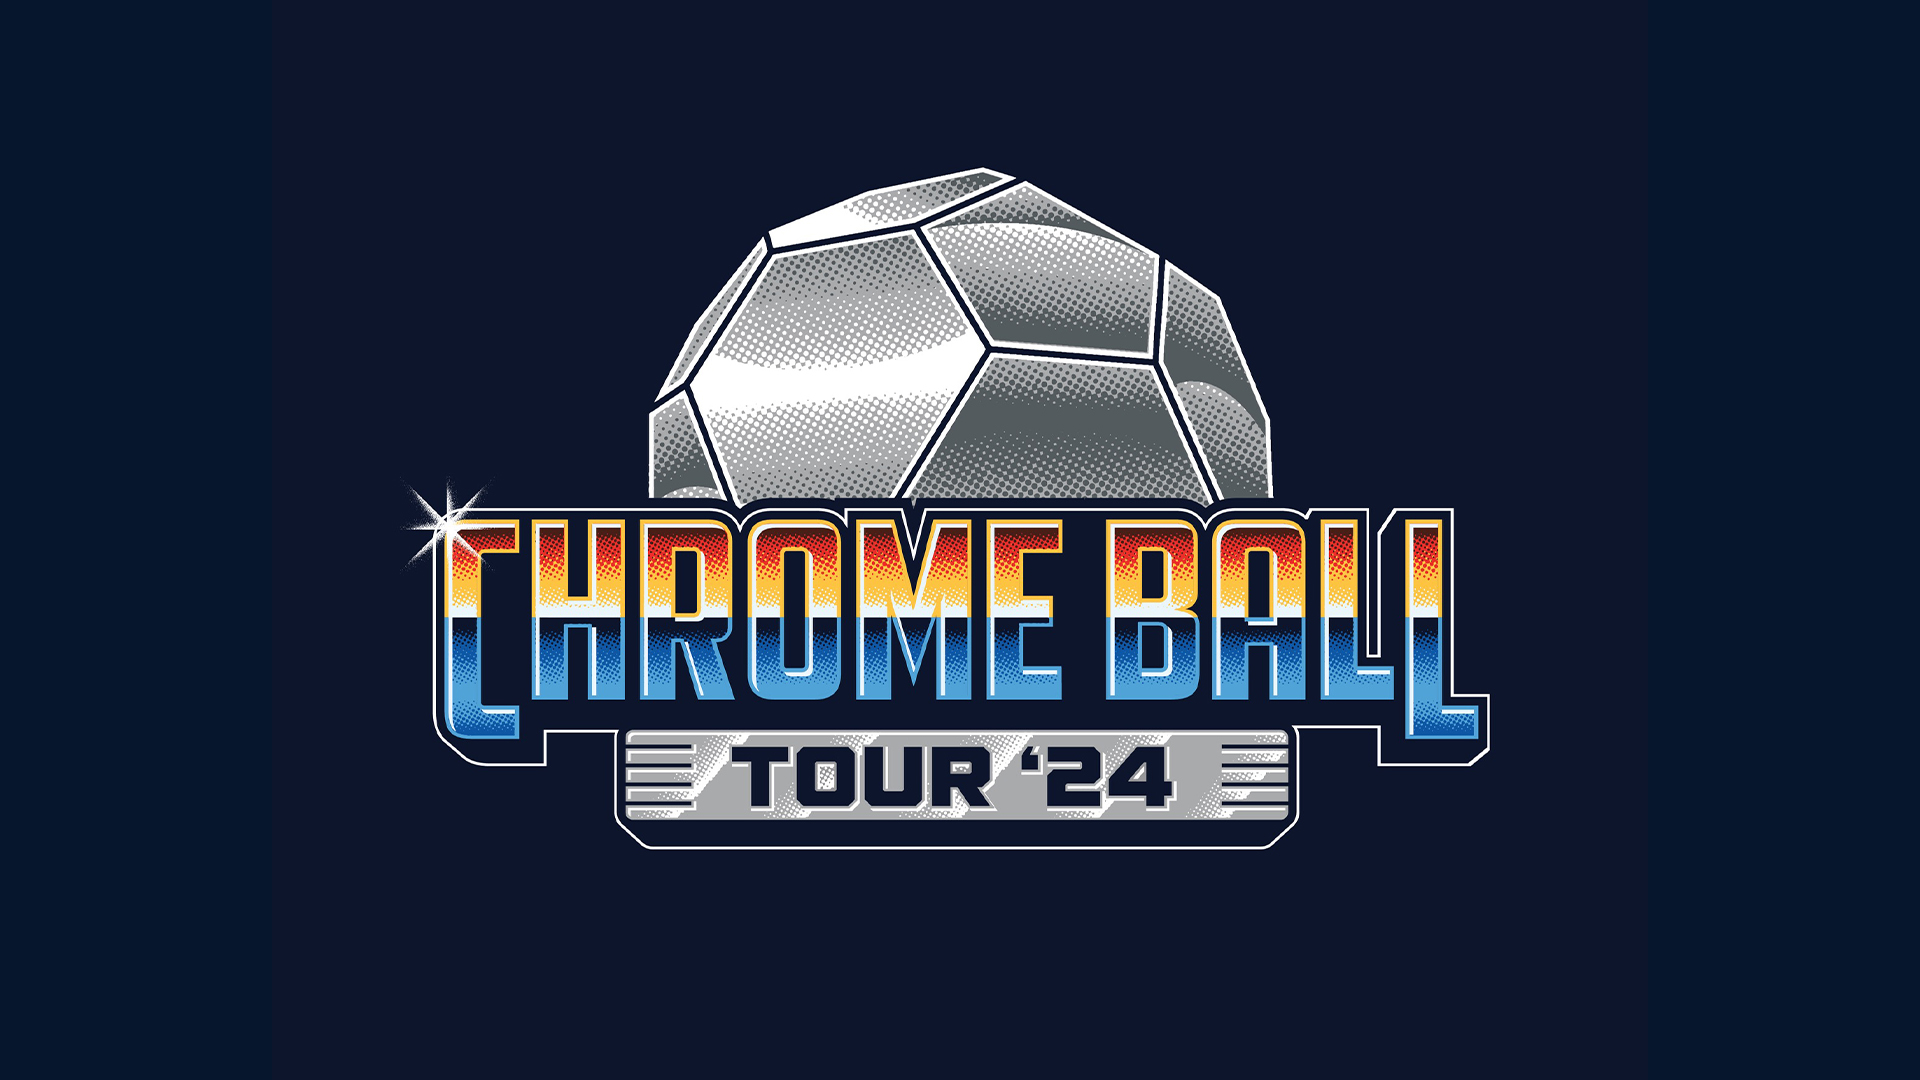 San Diego FC Introduces the Chrome Ball Tour